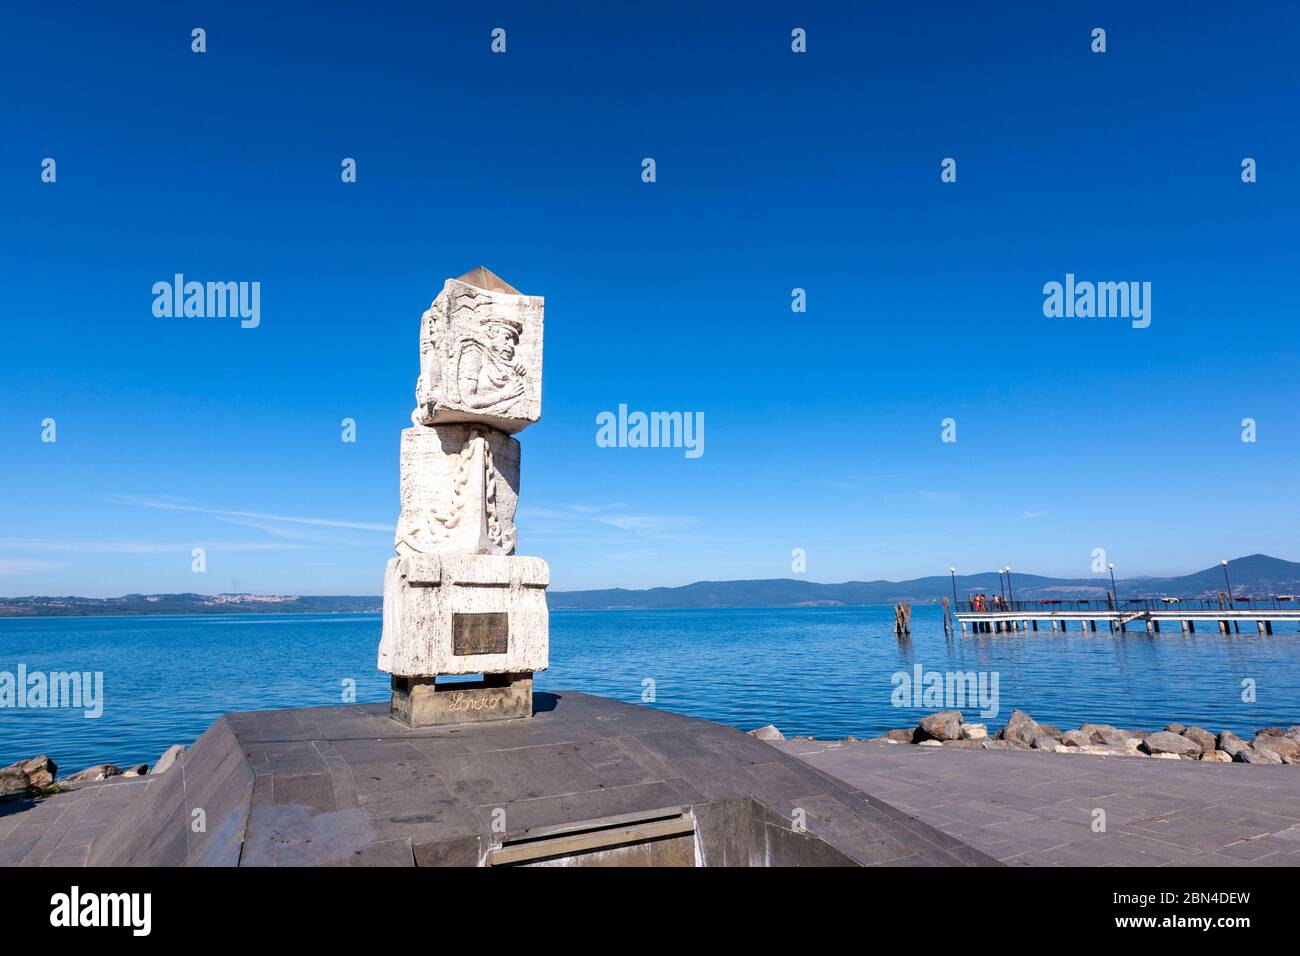 Monumento alla Gente di Mare, Anguillara Sabazia, Lake Bracciano, Lazio, central Italy, Stock Photo